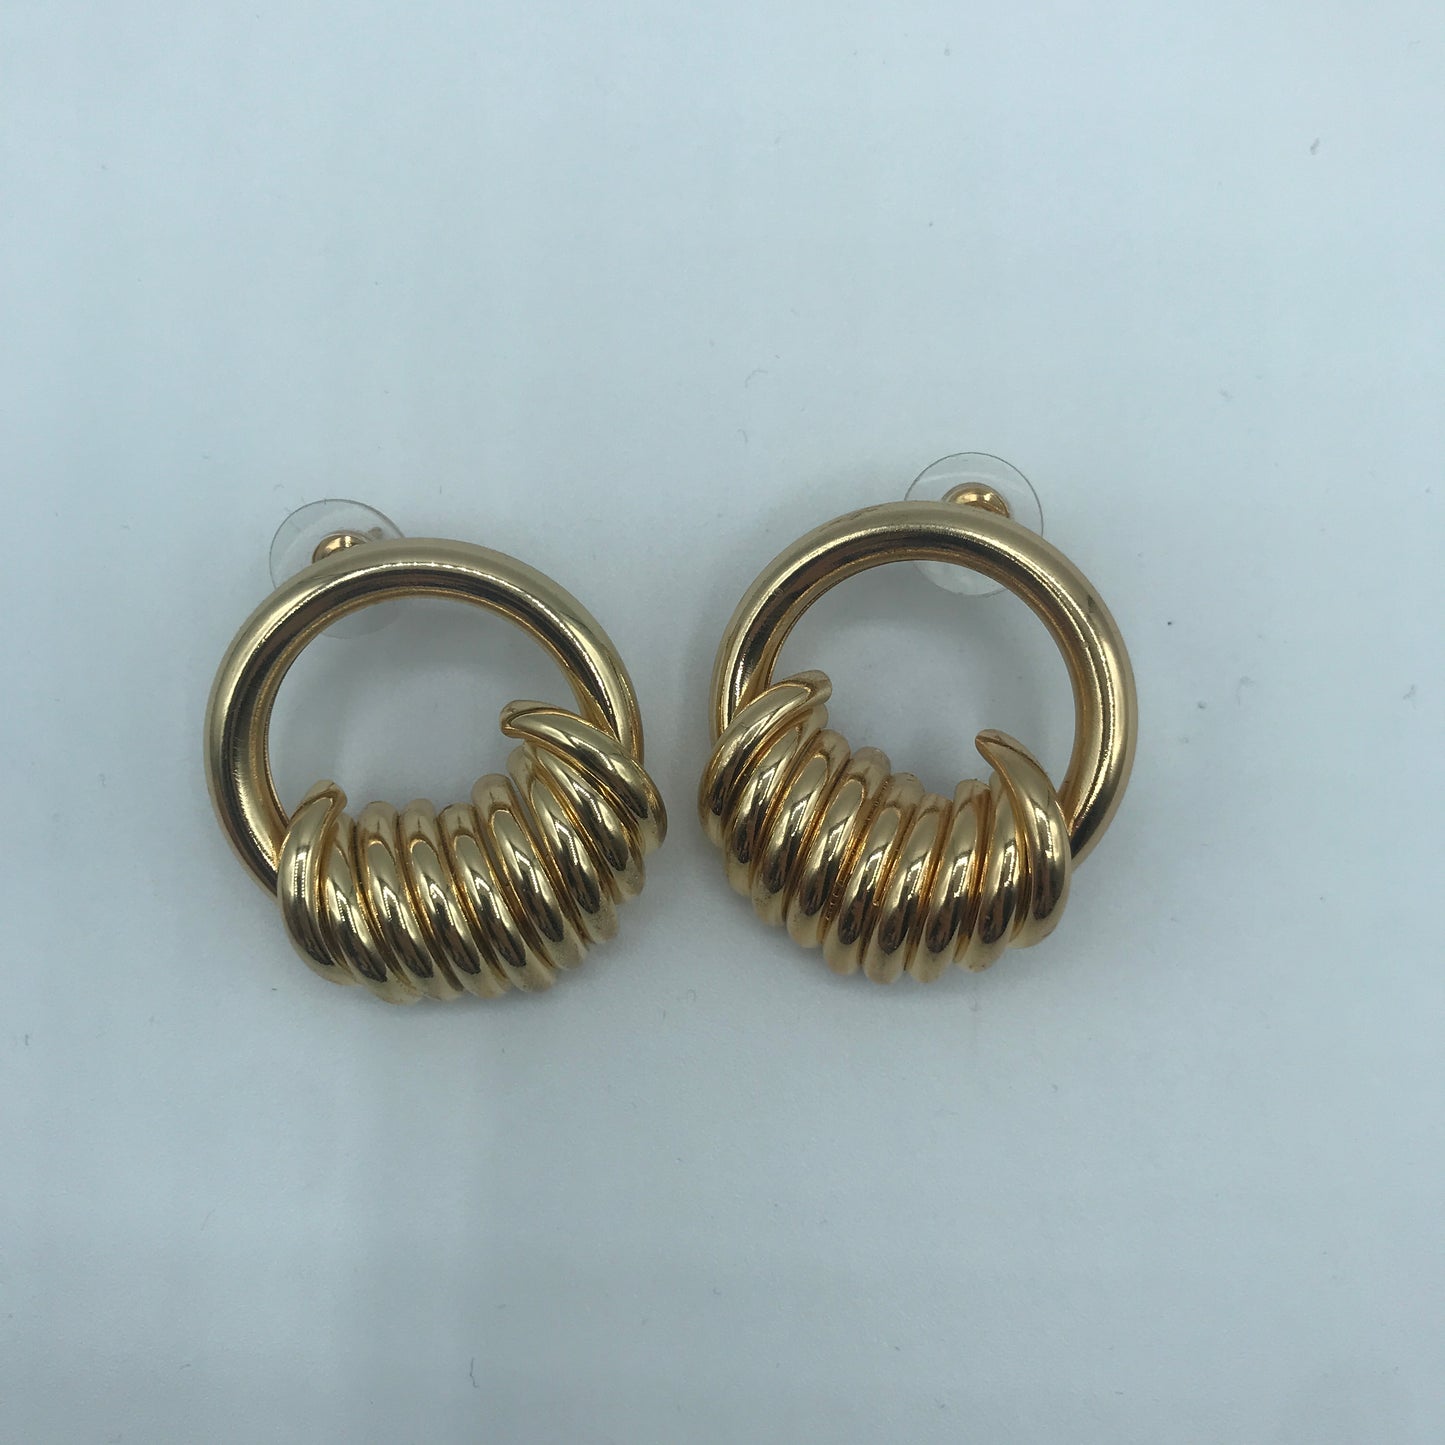 String ring earrings